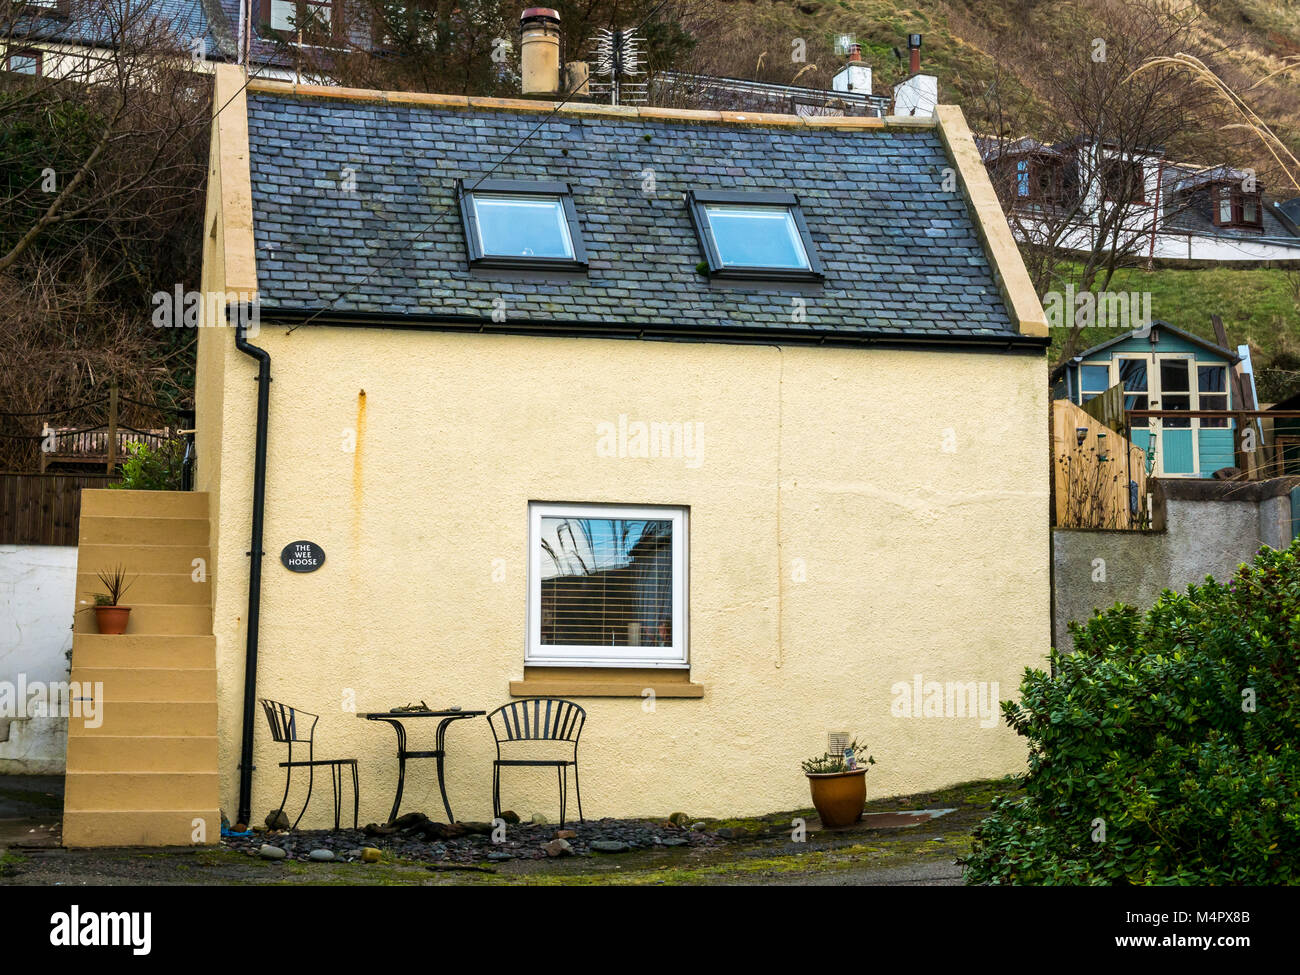 Petite maison appelée Wee Hoose, village pittoresque, Gardenstown, Aberdeenshire, Écosse, Royaume-Uni Banque D'Images